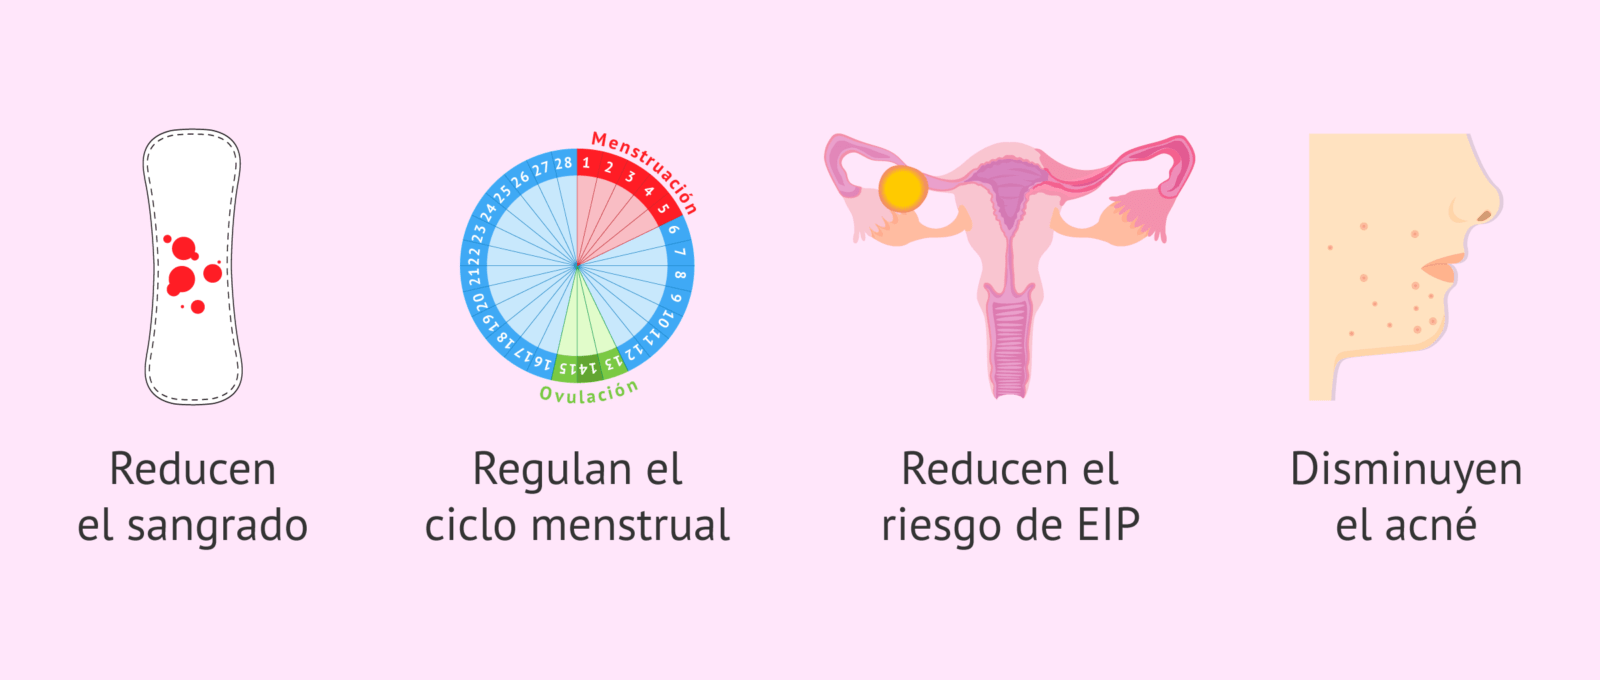 analisis-de-las-ventajas-y-desventajas-del-metodo-del-calendario-menstrual-todo-lo-que-necesitas-saber